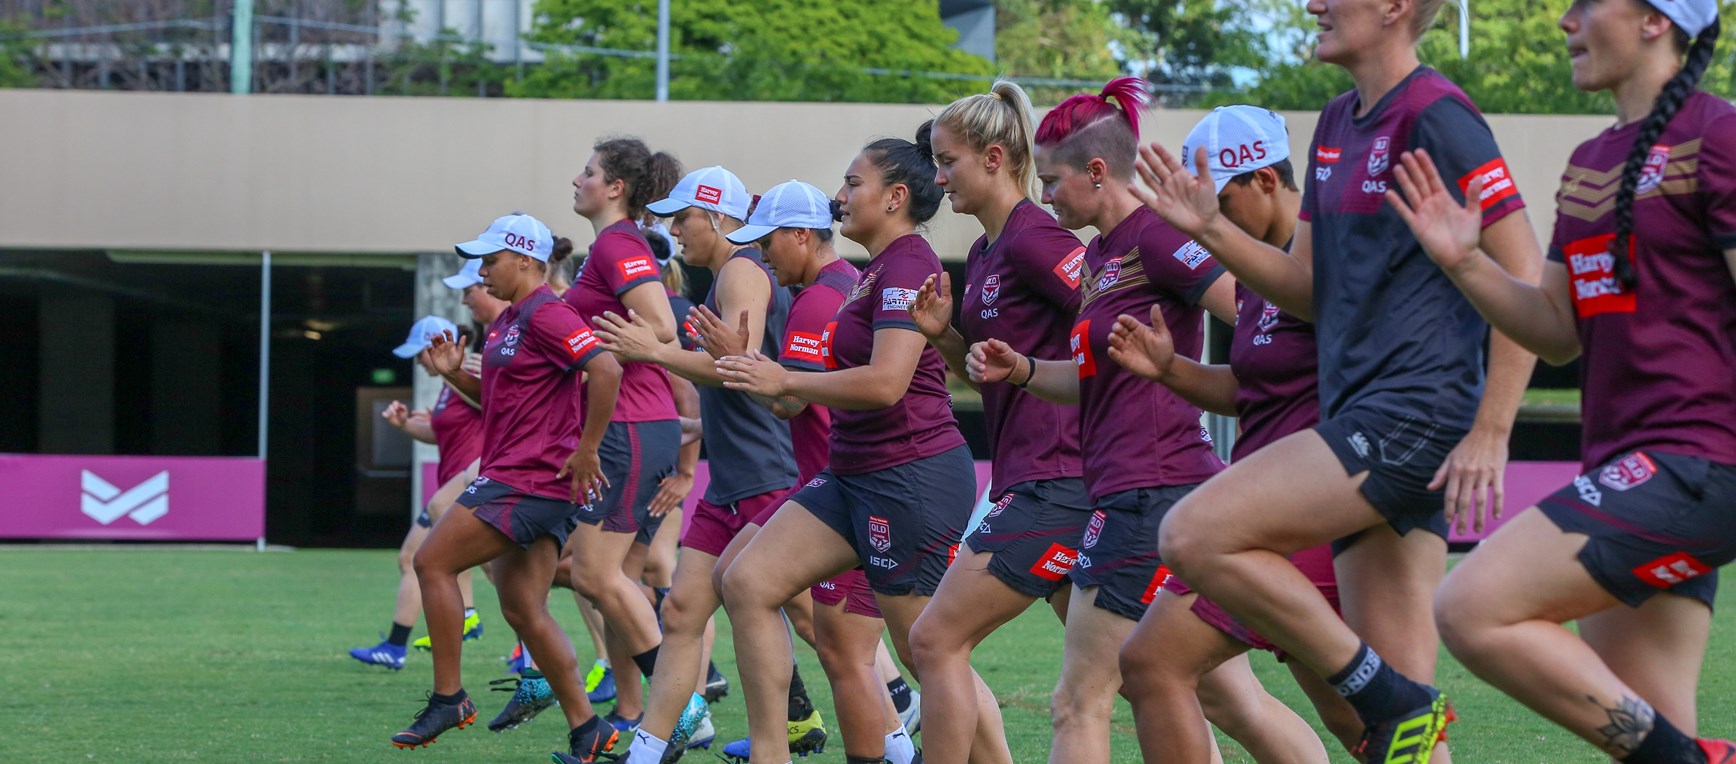 In pictures: Queensland's top women in action